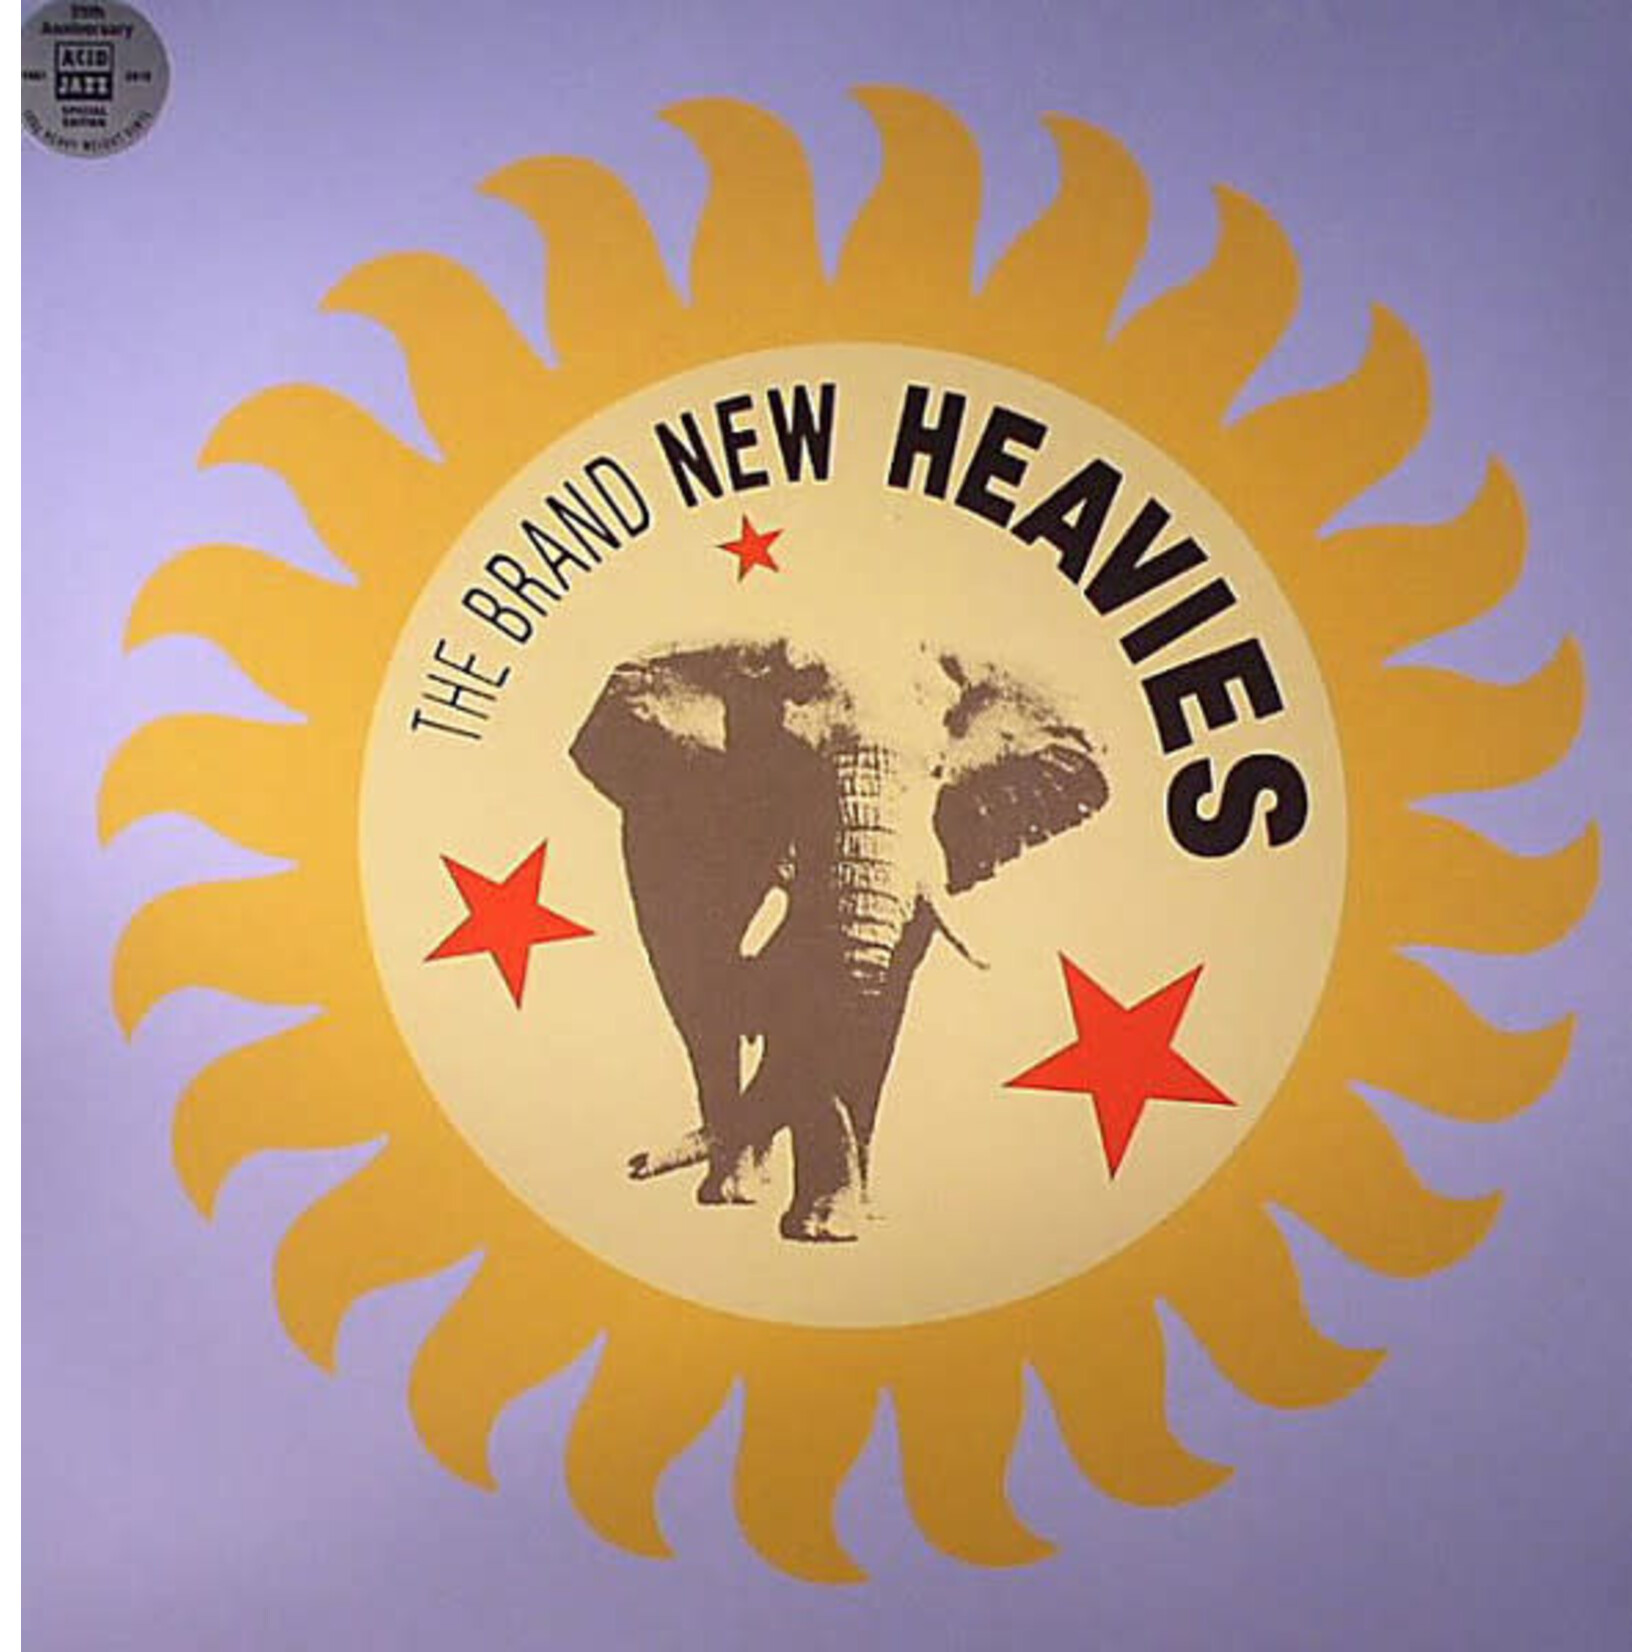 [New] Brand New Heavies - The Brand New Heavies (blue vinyl)